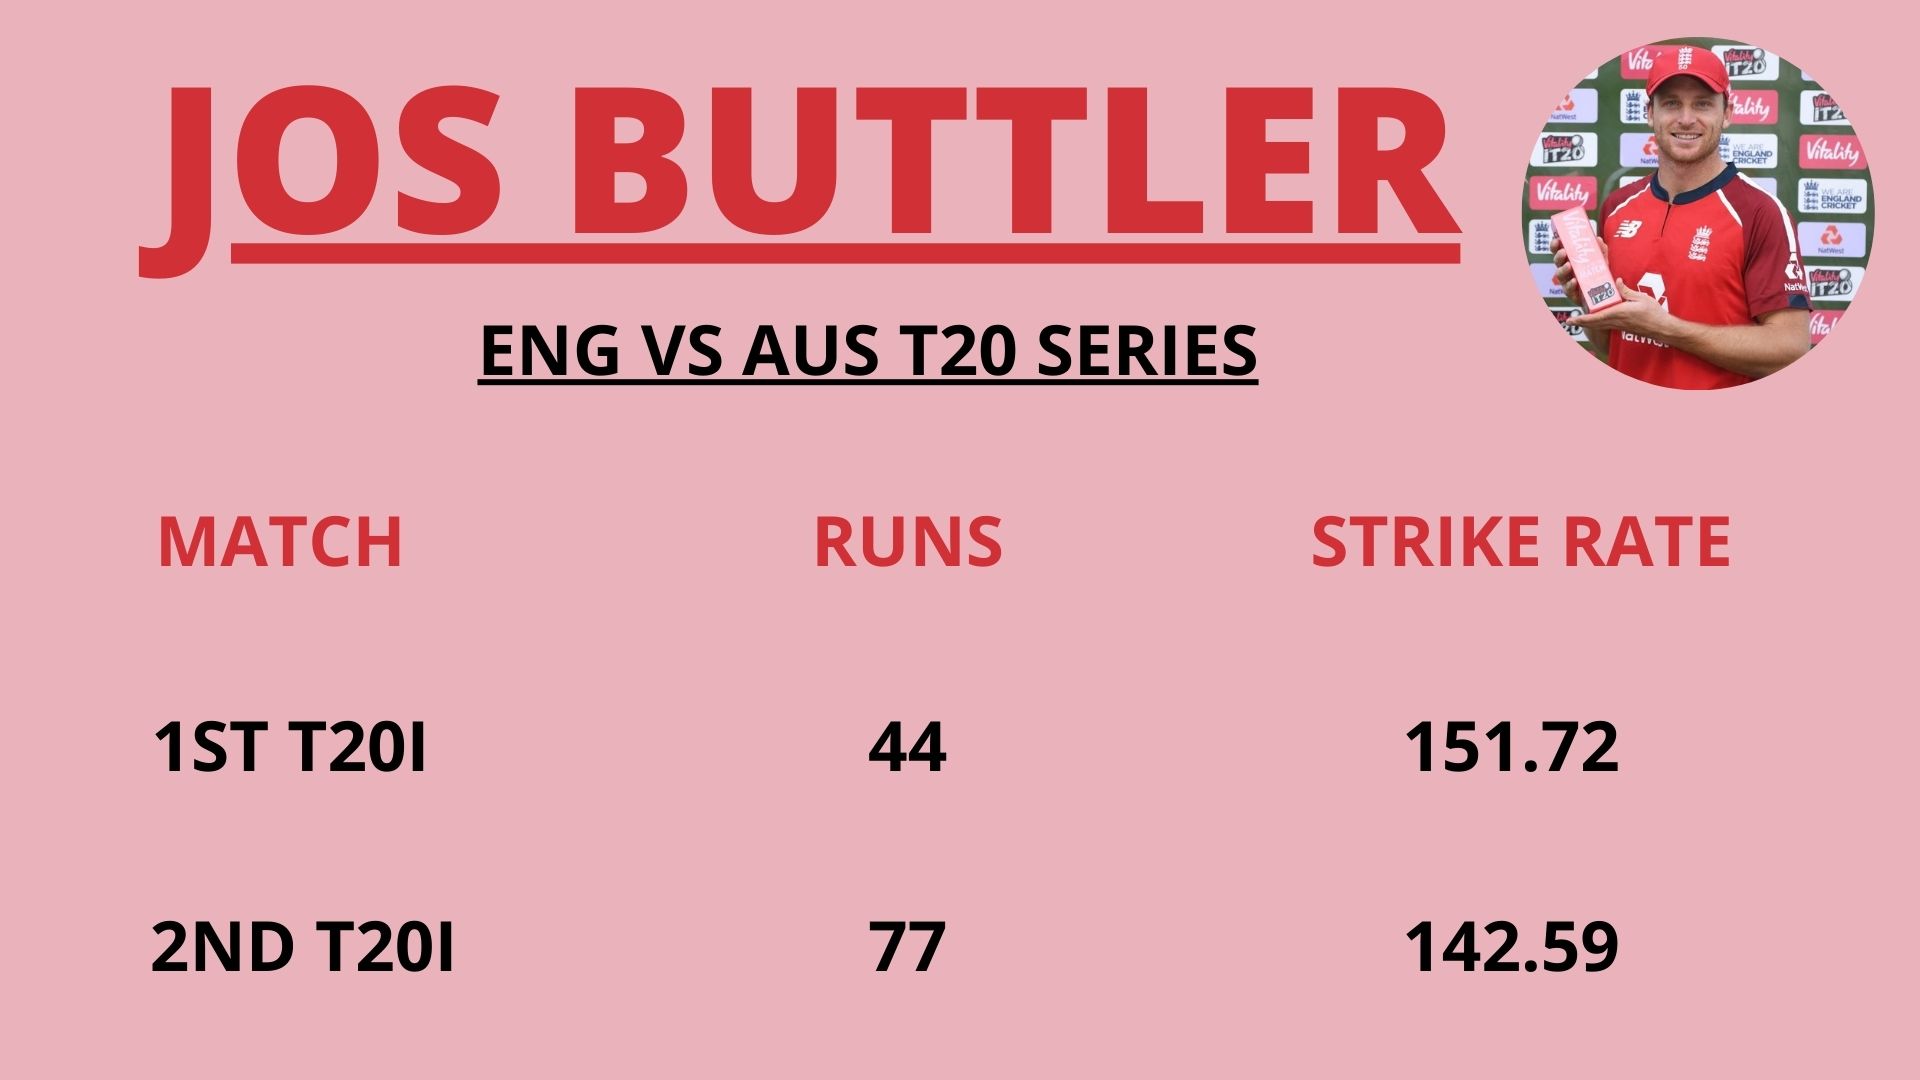 ऑस्ट्रेलिया के खिलाफ टी-20 सीरीज में जोस बटलर का प्रदर्शन